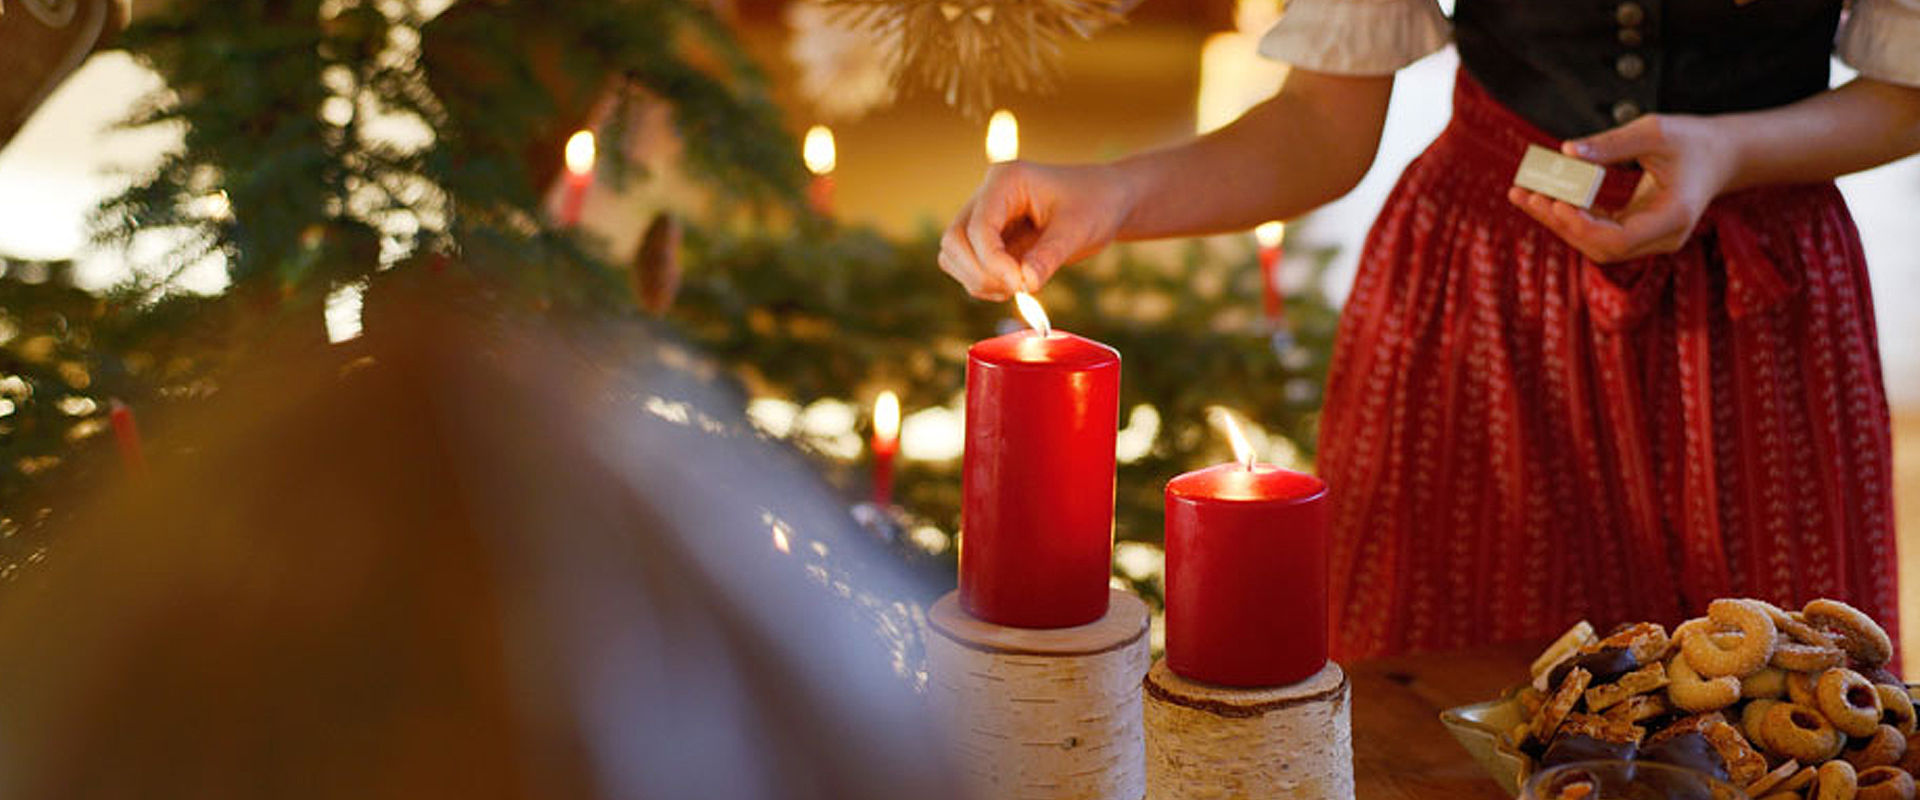 Donna in dirndl accende una candela rossa e accanto ci sono biscotti natalizi